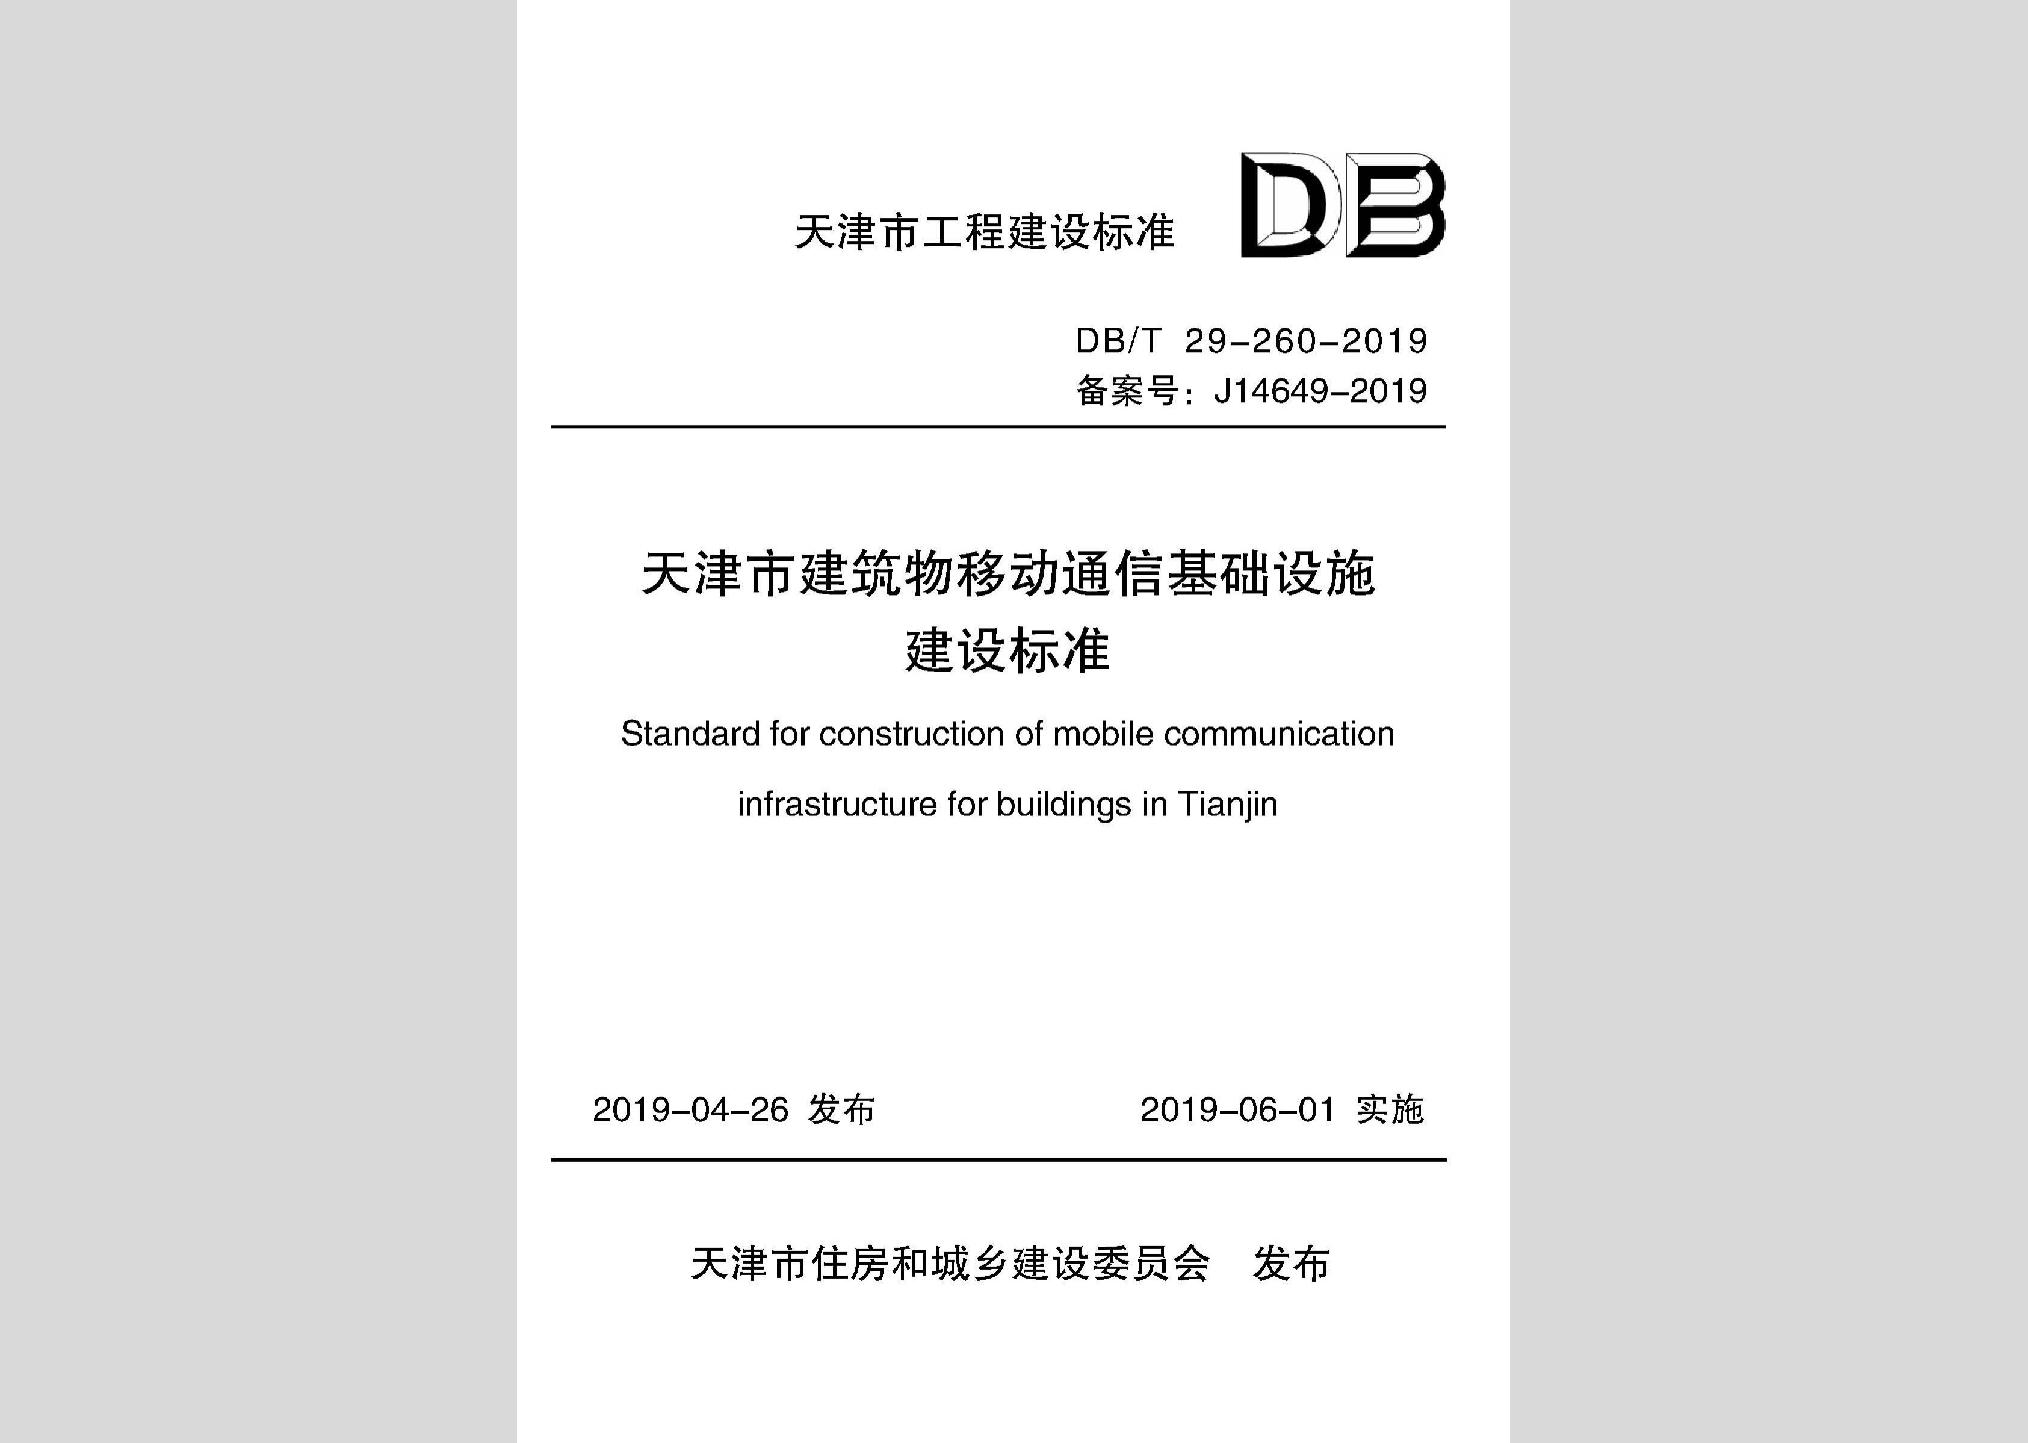 DB/T29-260-2019：天津市建筑物移动通信基础设施建设标准